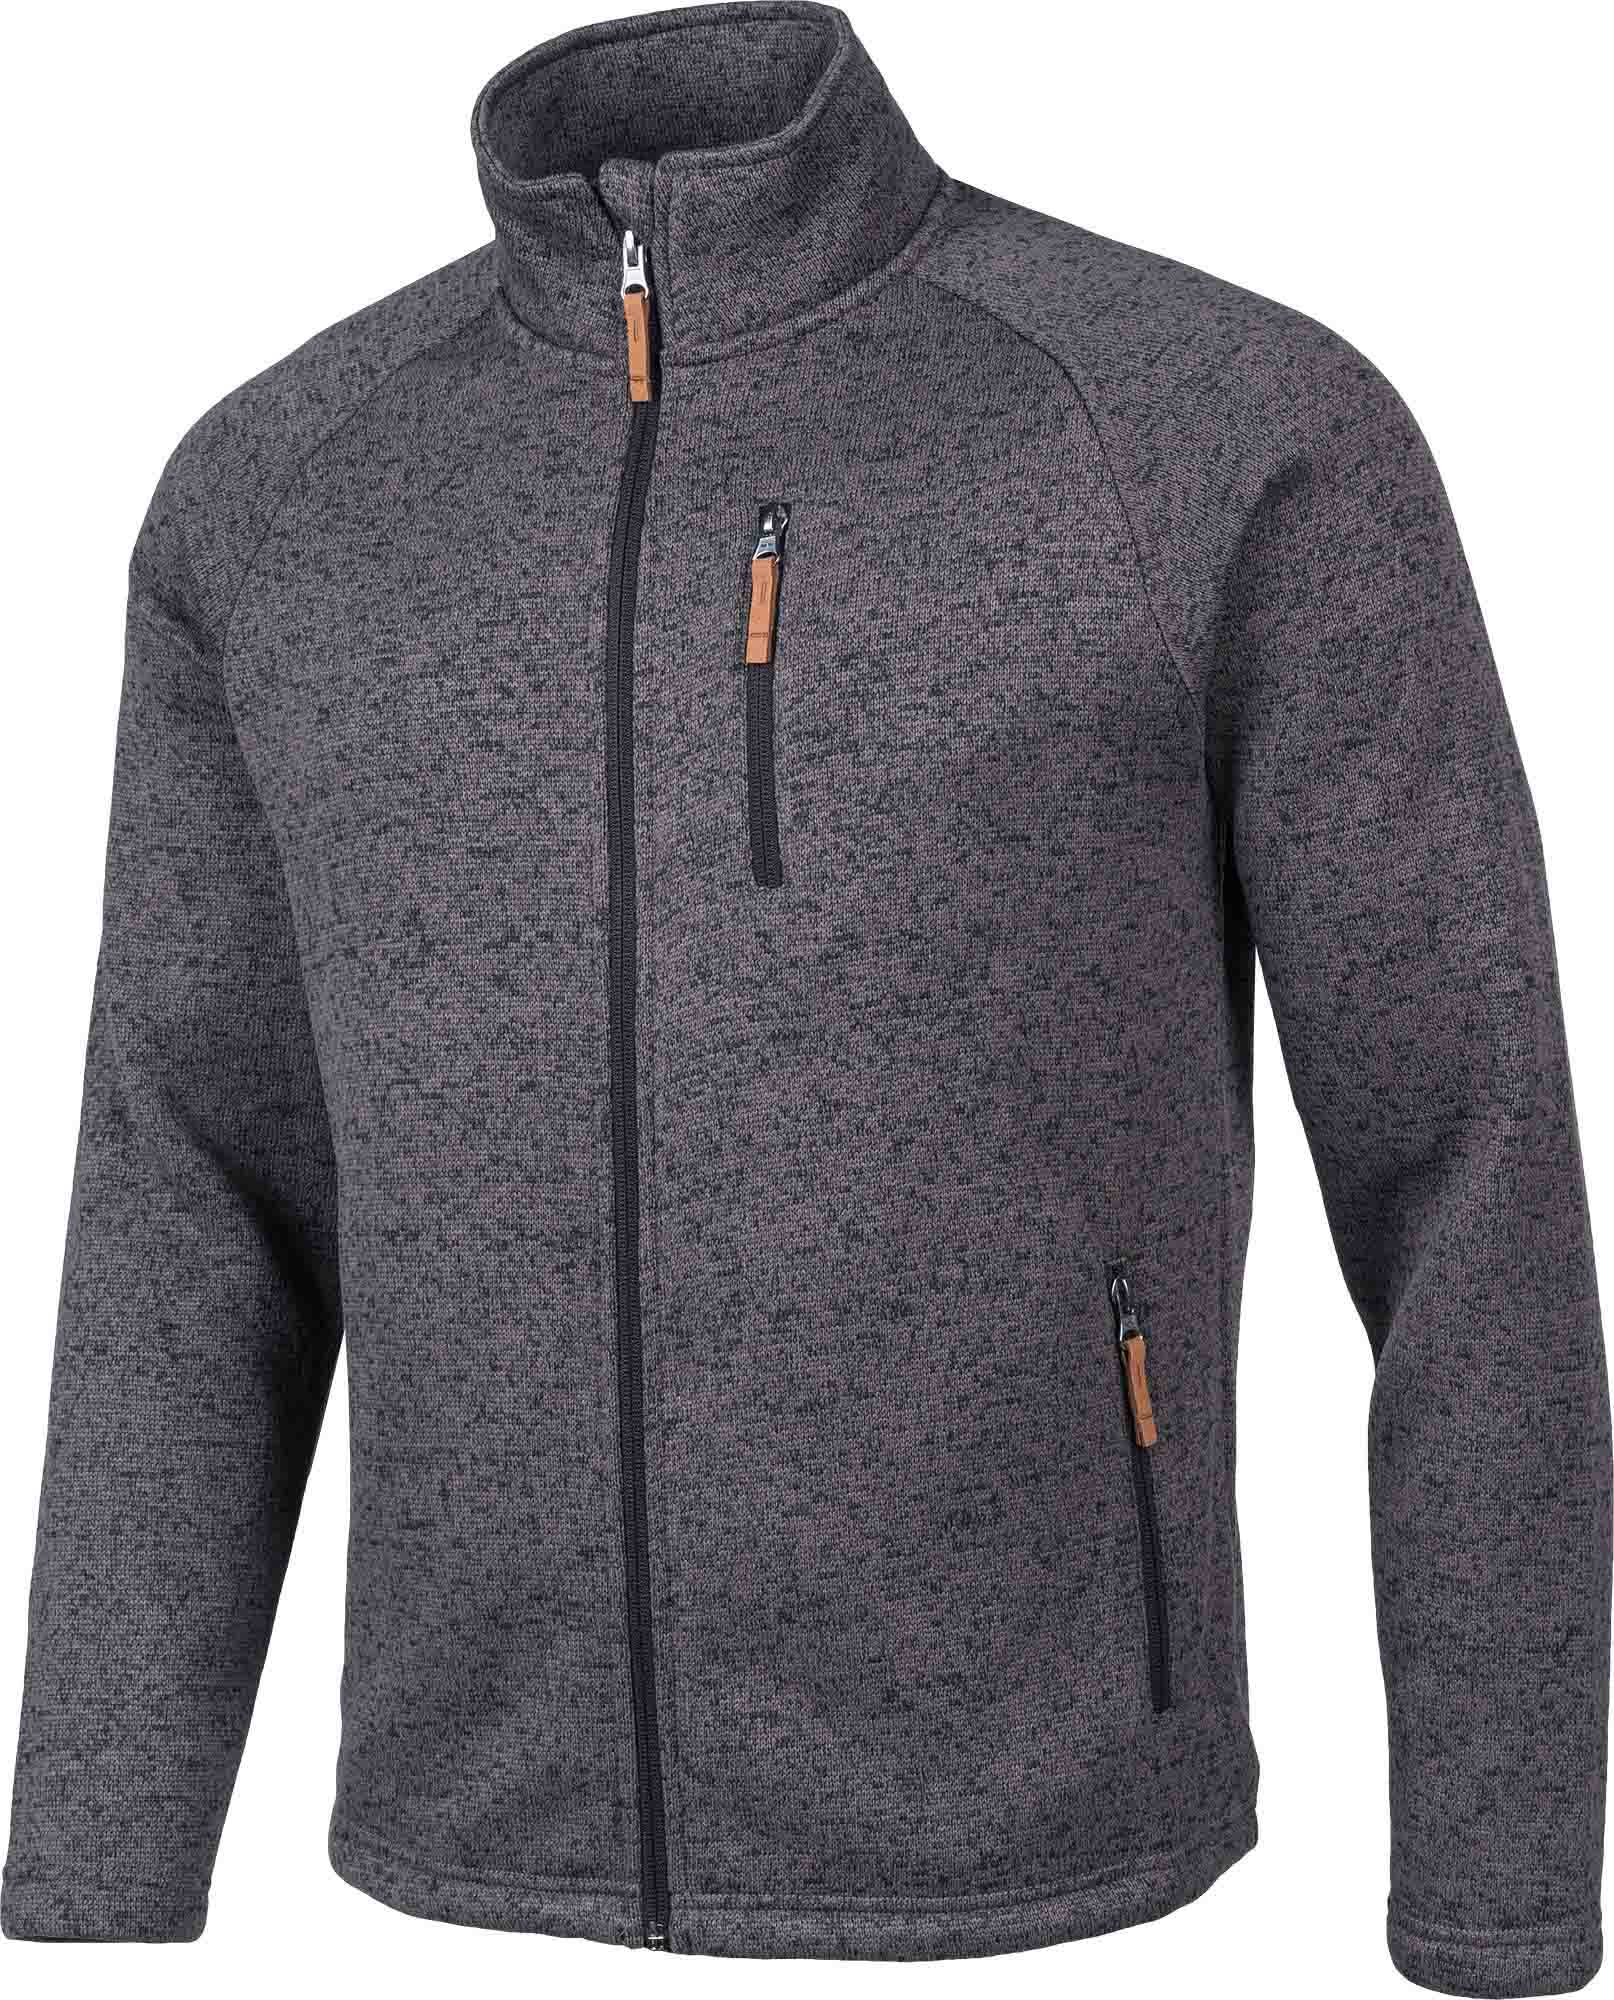 Men’s fleece sweatshirt in pullover design